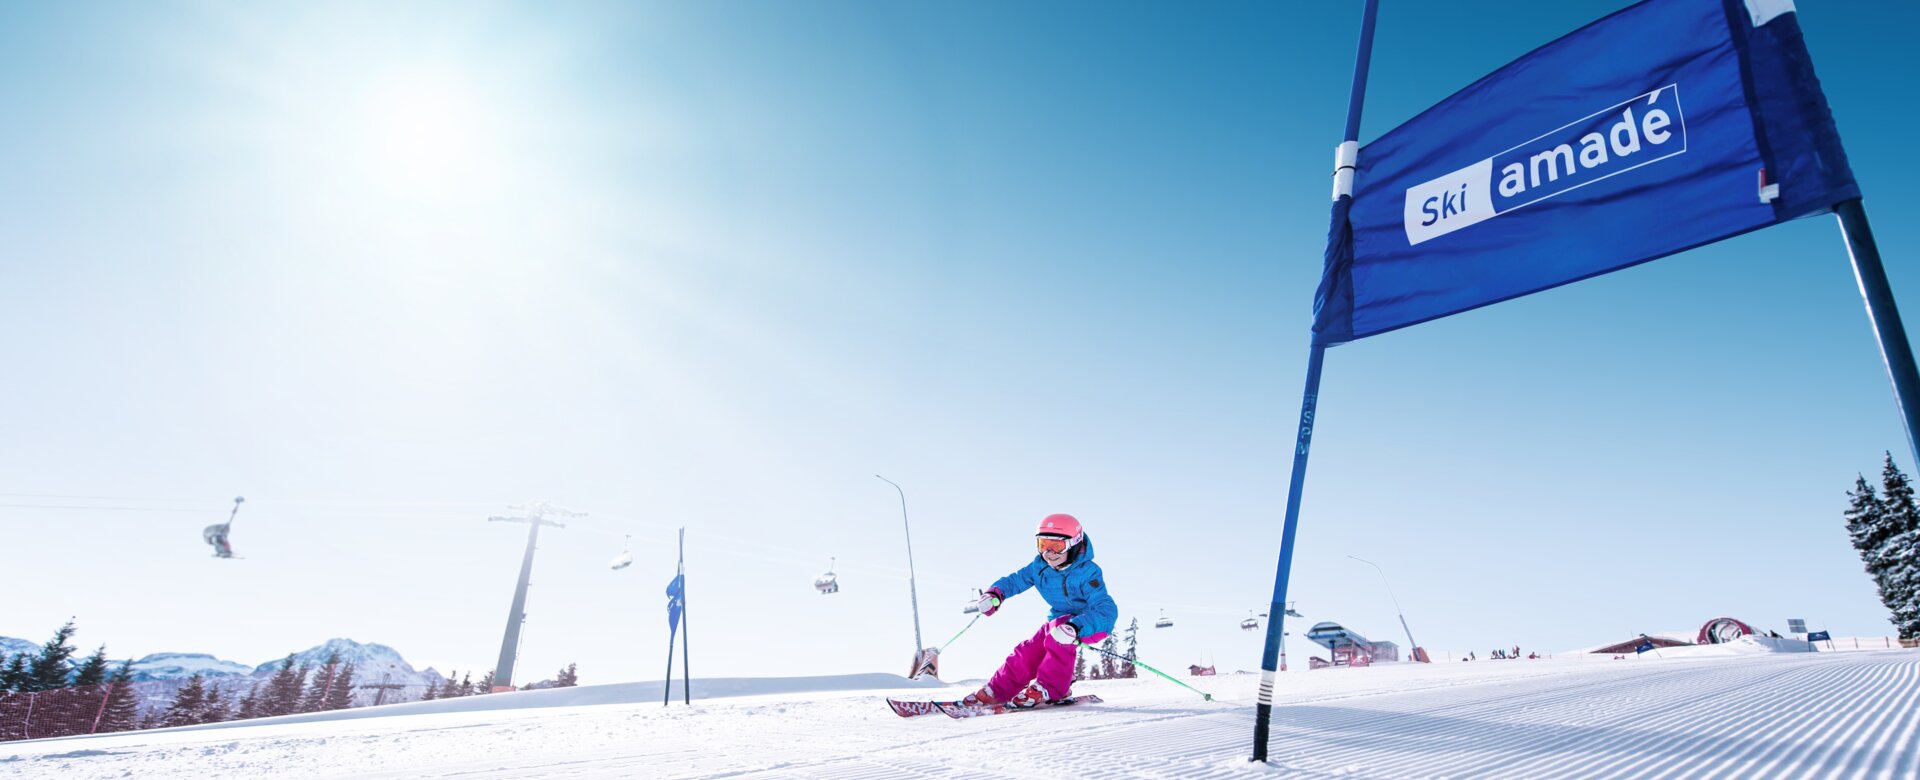 Kind fährt auf Skiern in die kurve hinein, damit es an dem blauen Tor vorbeifahren kann